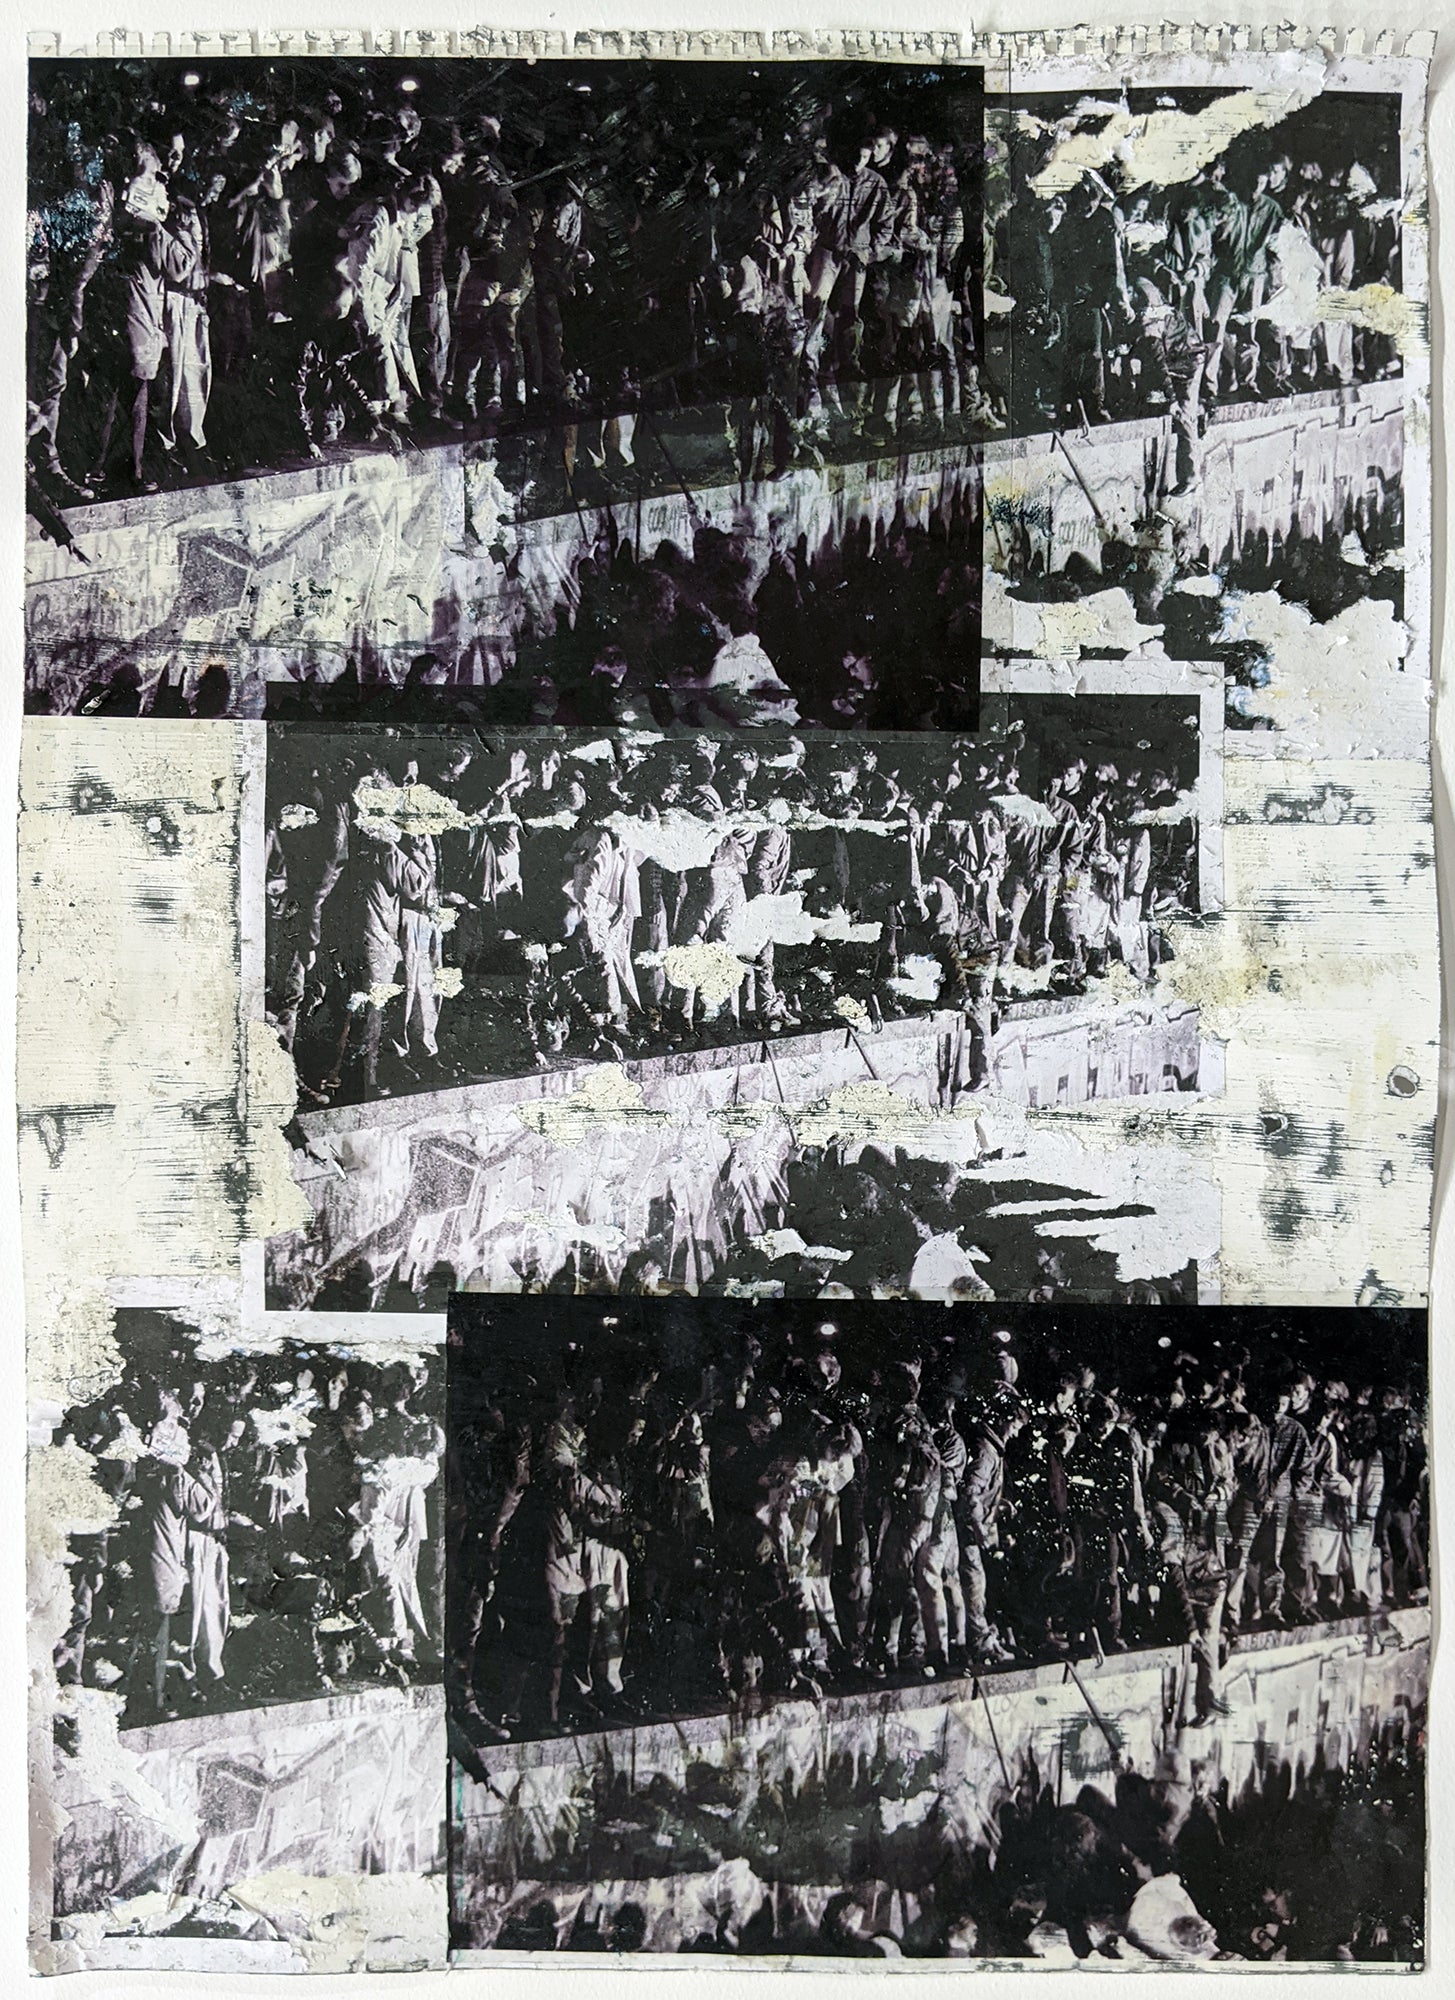 Zavier Ellis 'Freiheit XXII', 2021 Emulsion, acetate, collage on paper 59.4x42cm